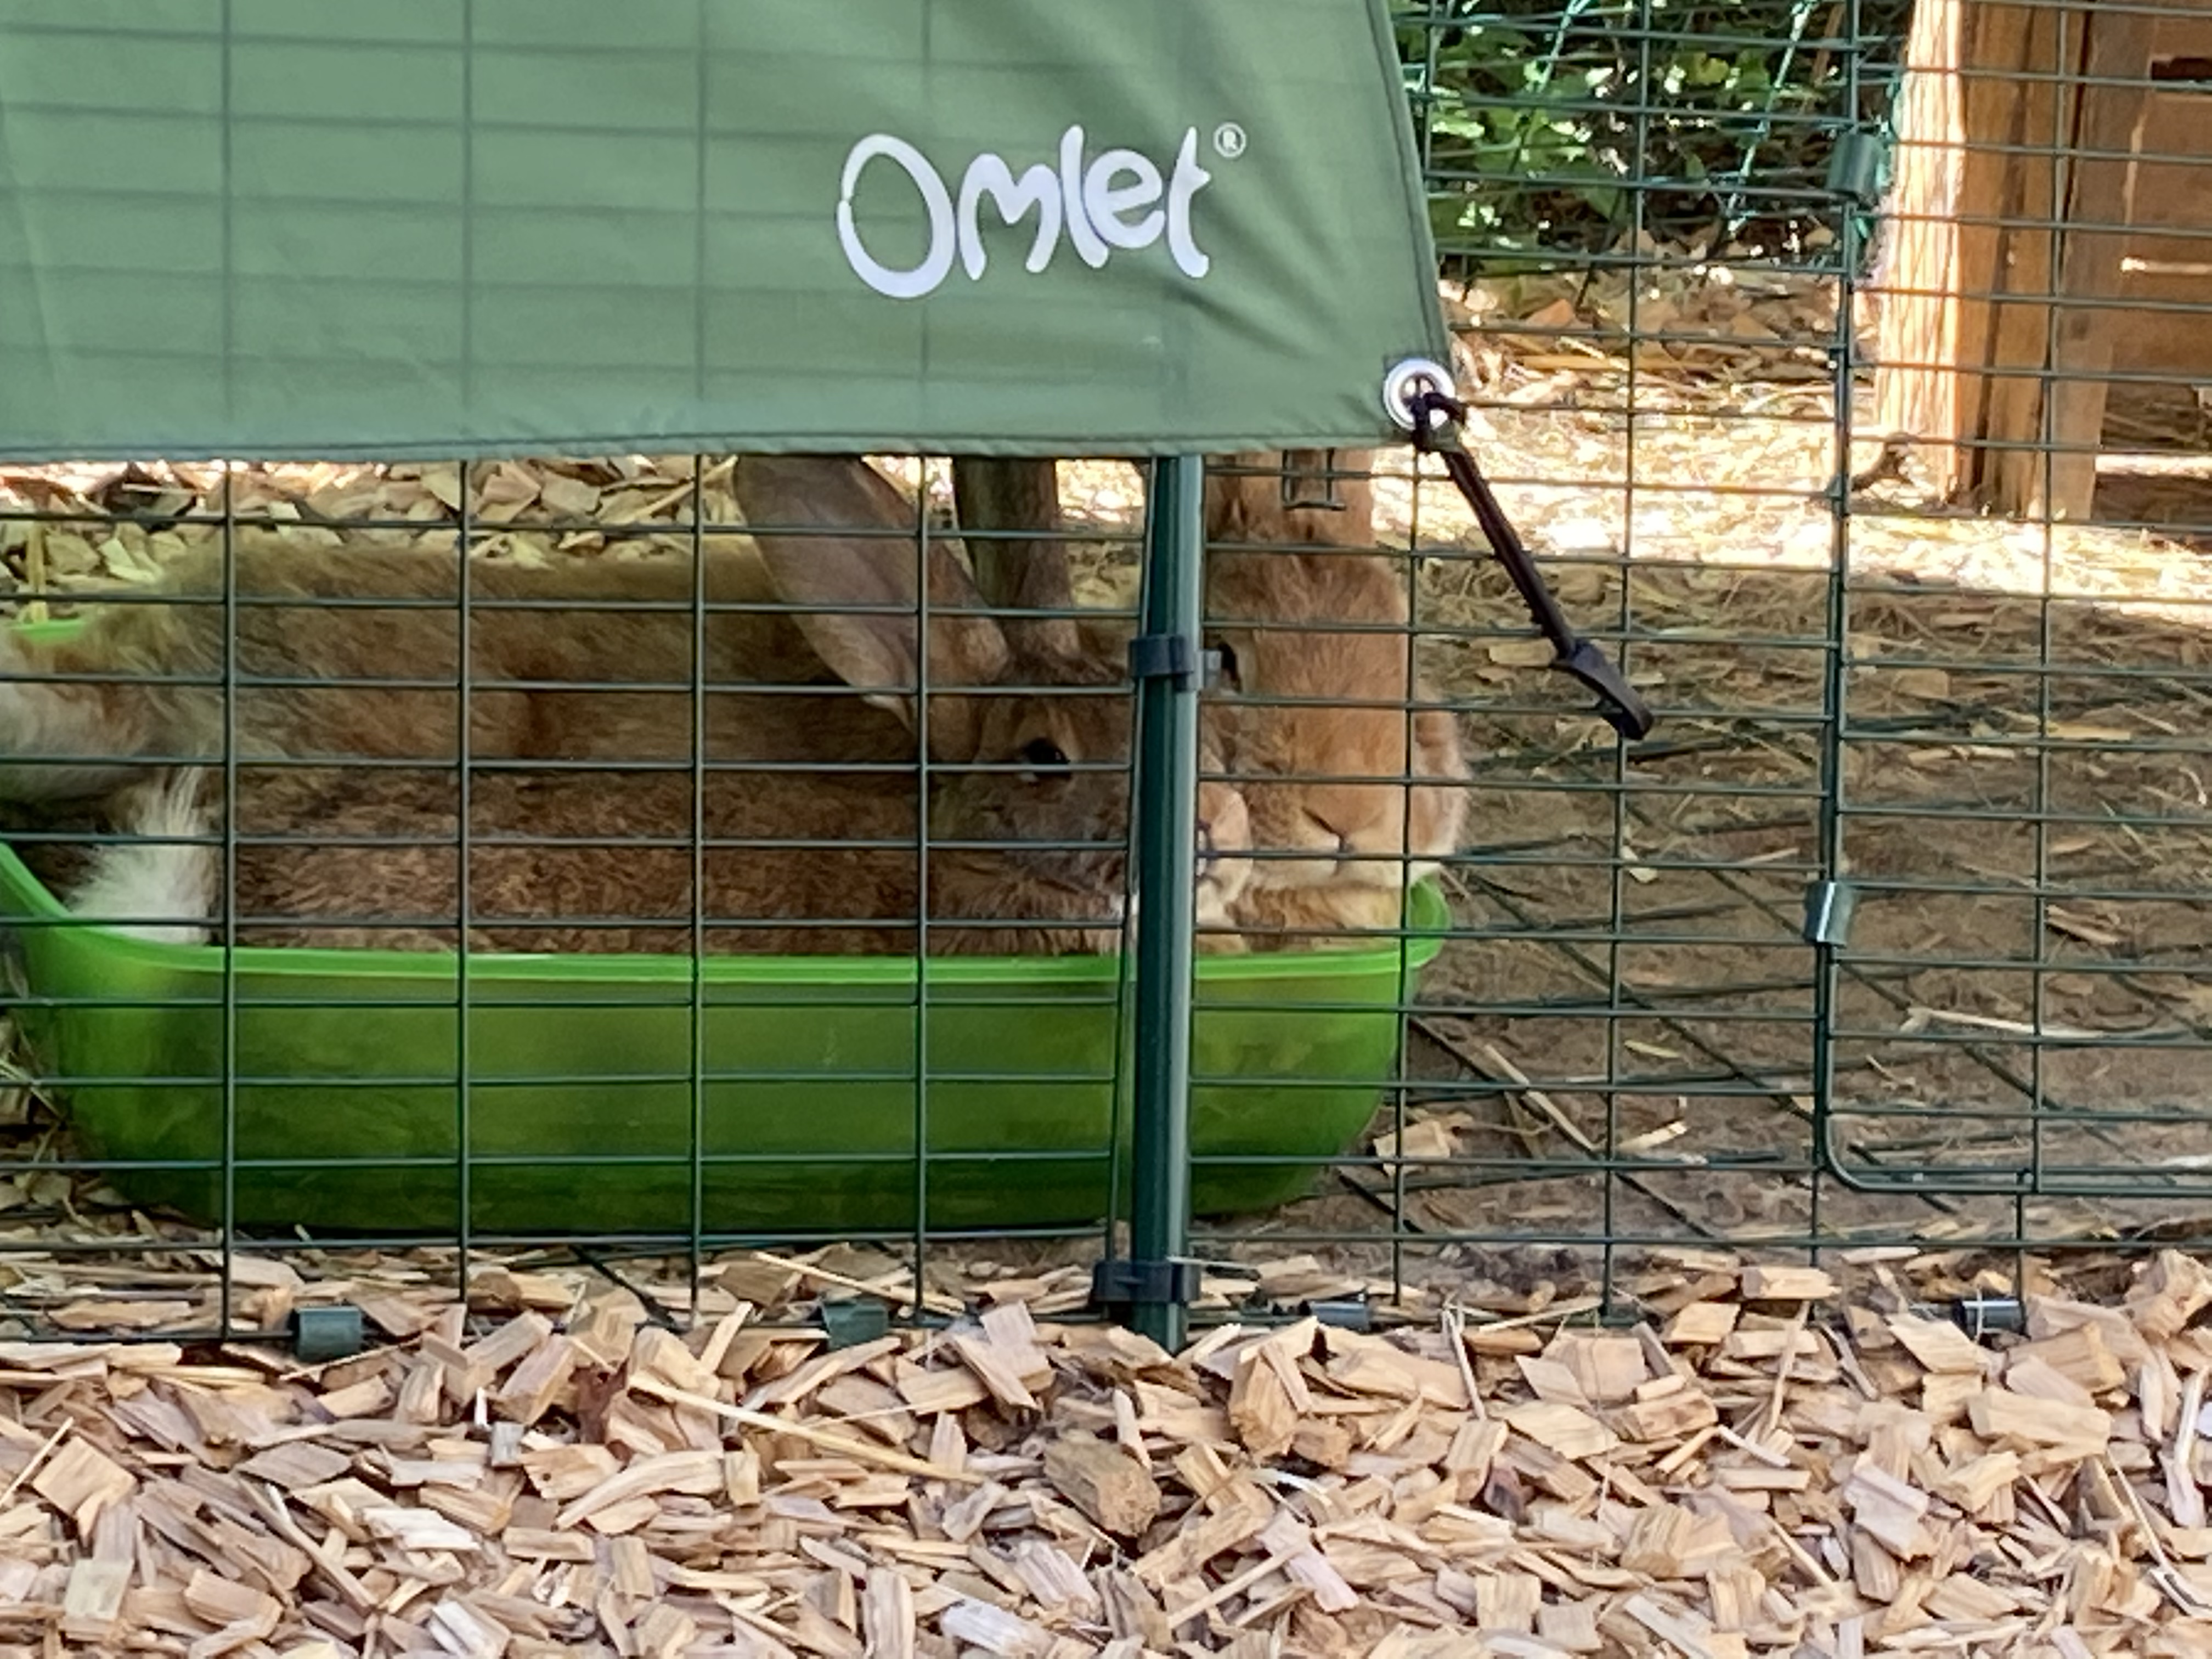 Dos conejos escondiendo un comedero Omlet.